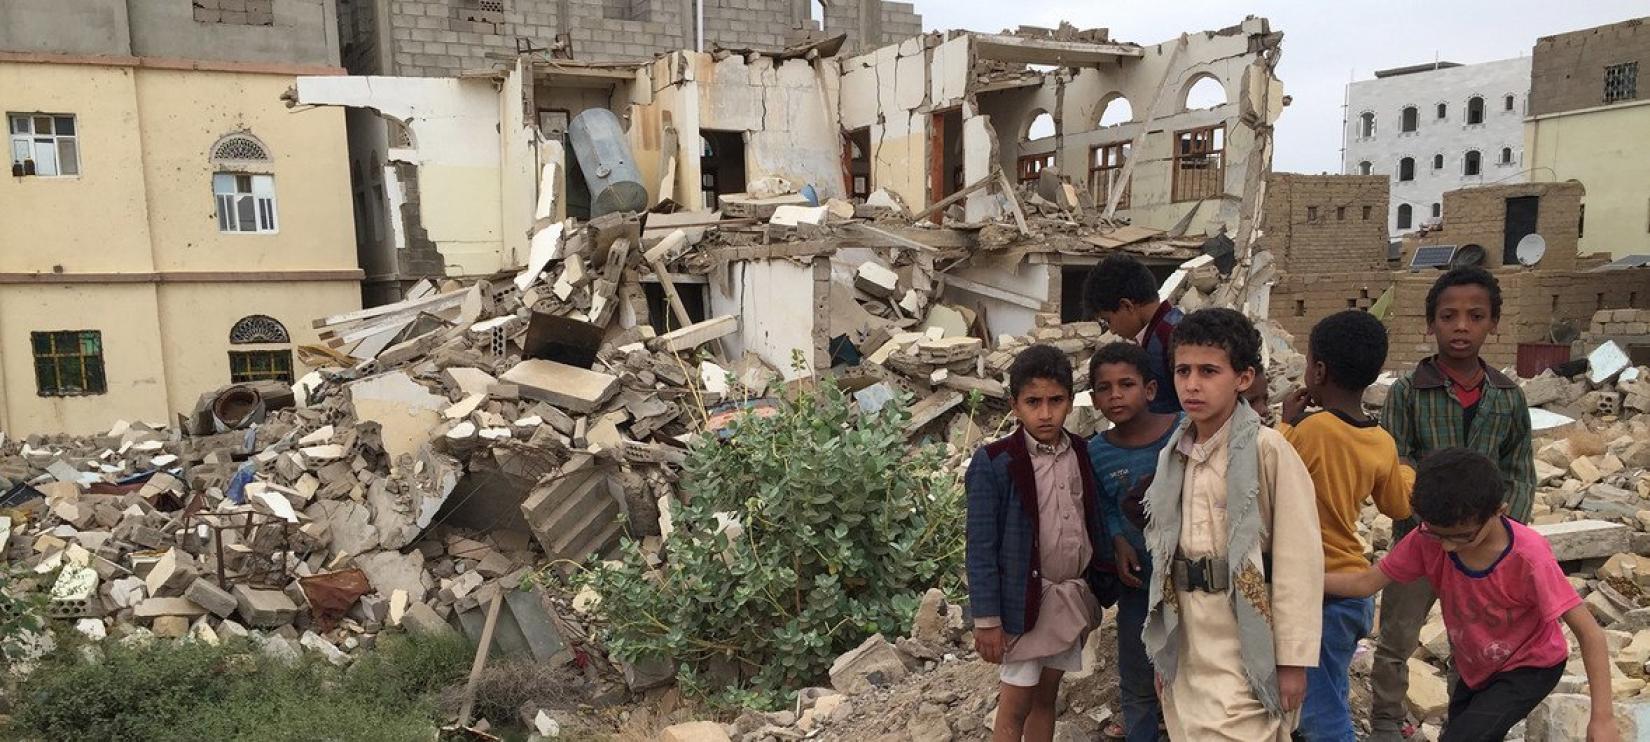 O Iêmen é uma das piores crises humanitárias do mundo, com 24 milhões de pessoas afetadas.